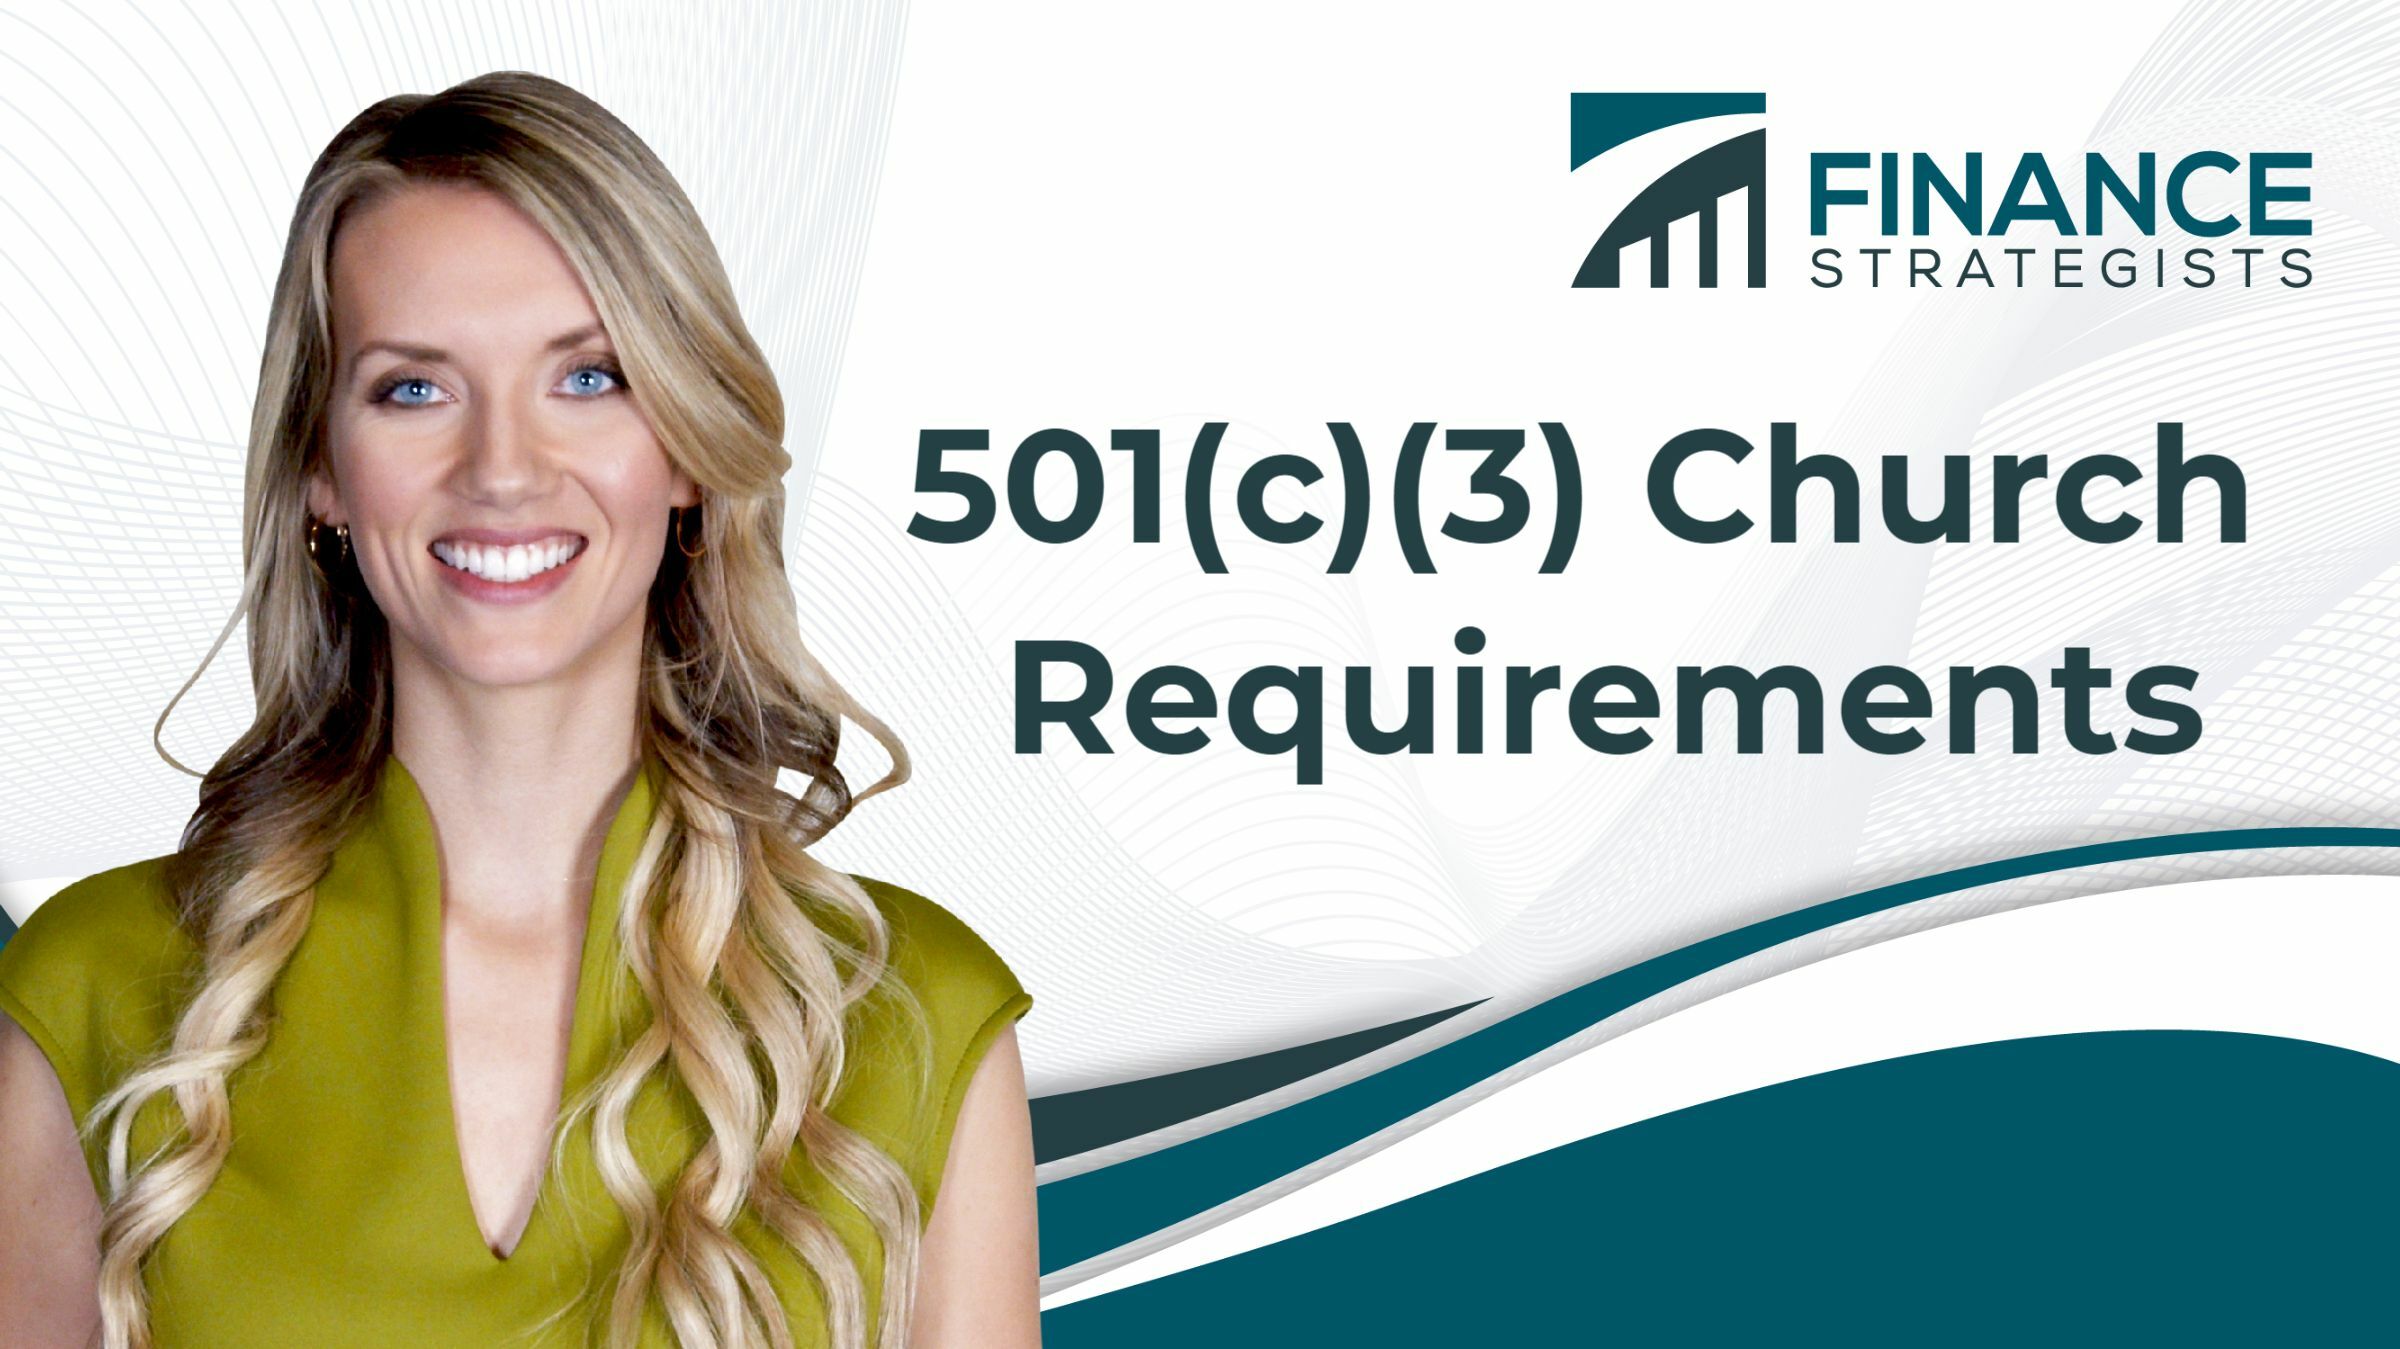 501(c)(3) Requisitos de la Iglesia